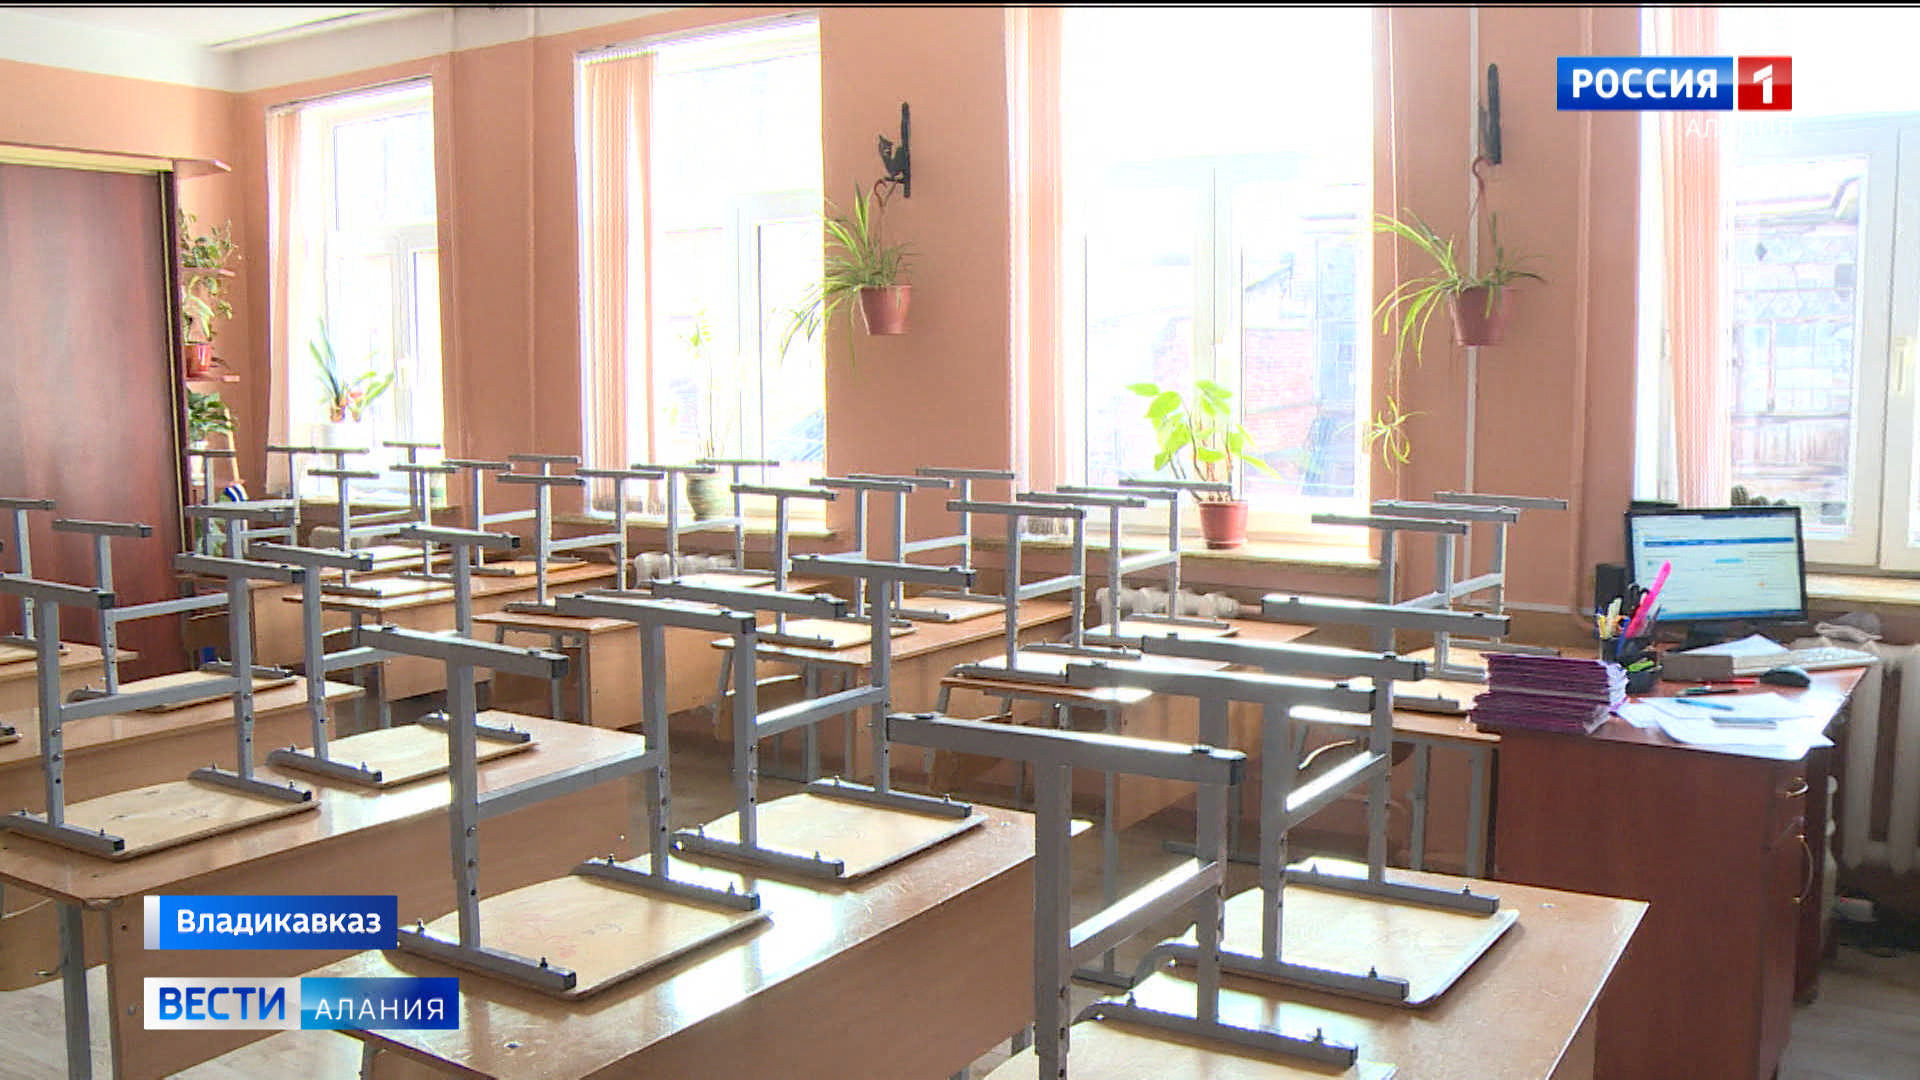 20 учебных заведений в Северной Осетии полностью закрыты на карантин по гриппу и ОРВИ